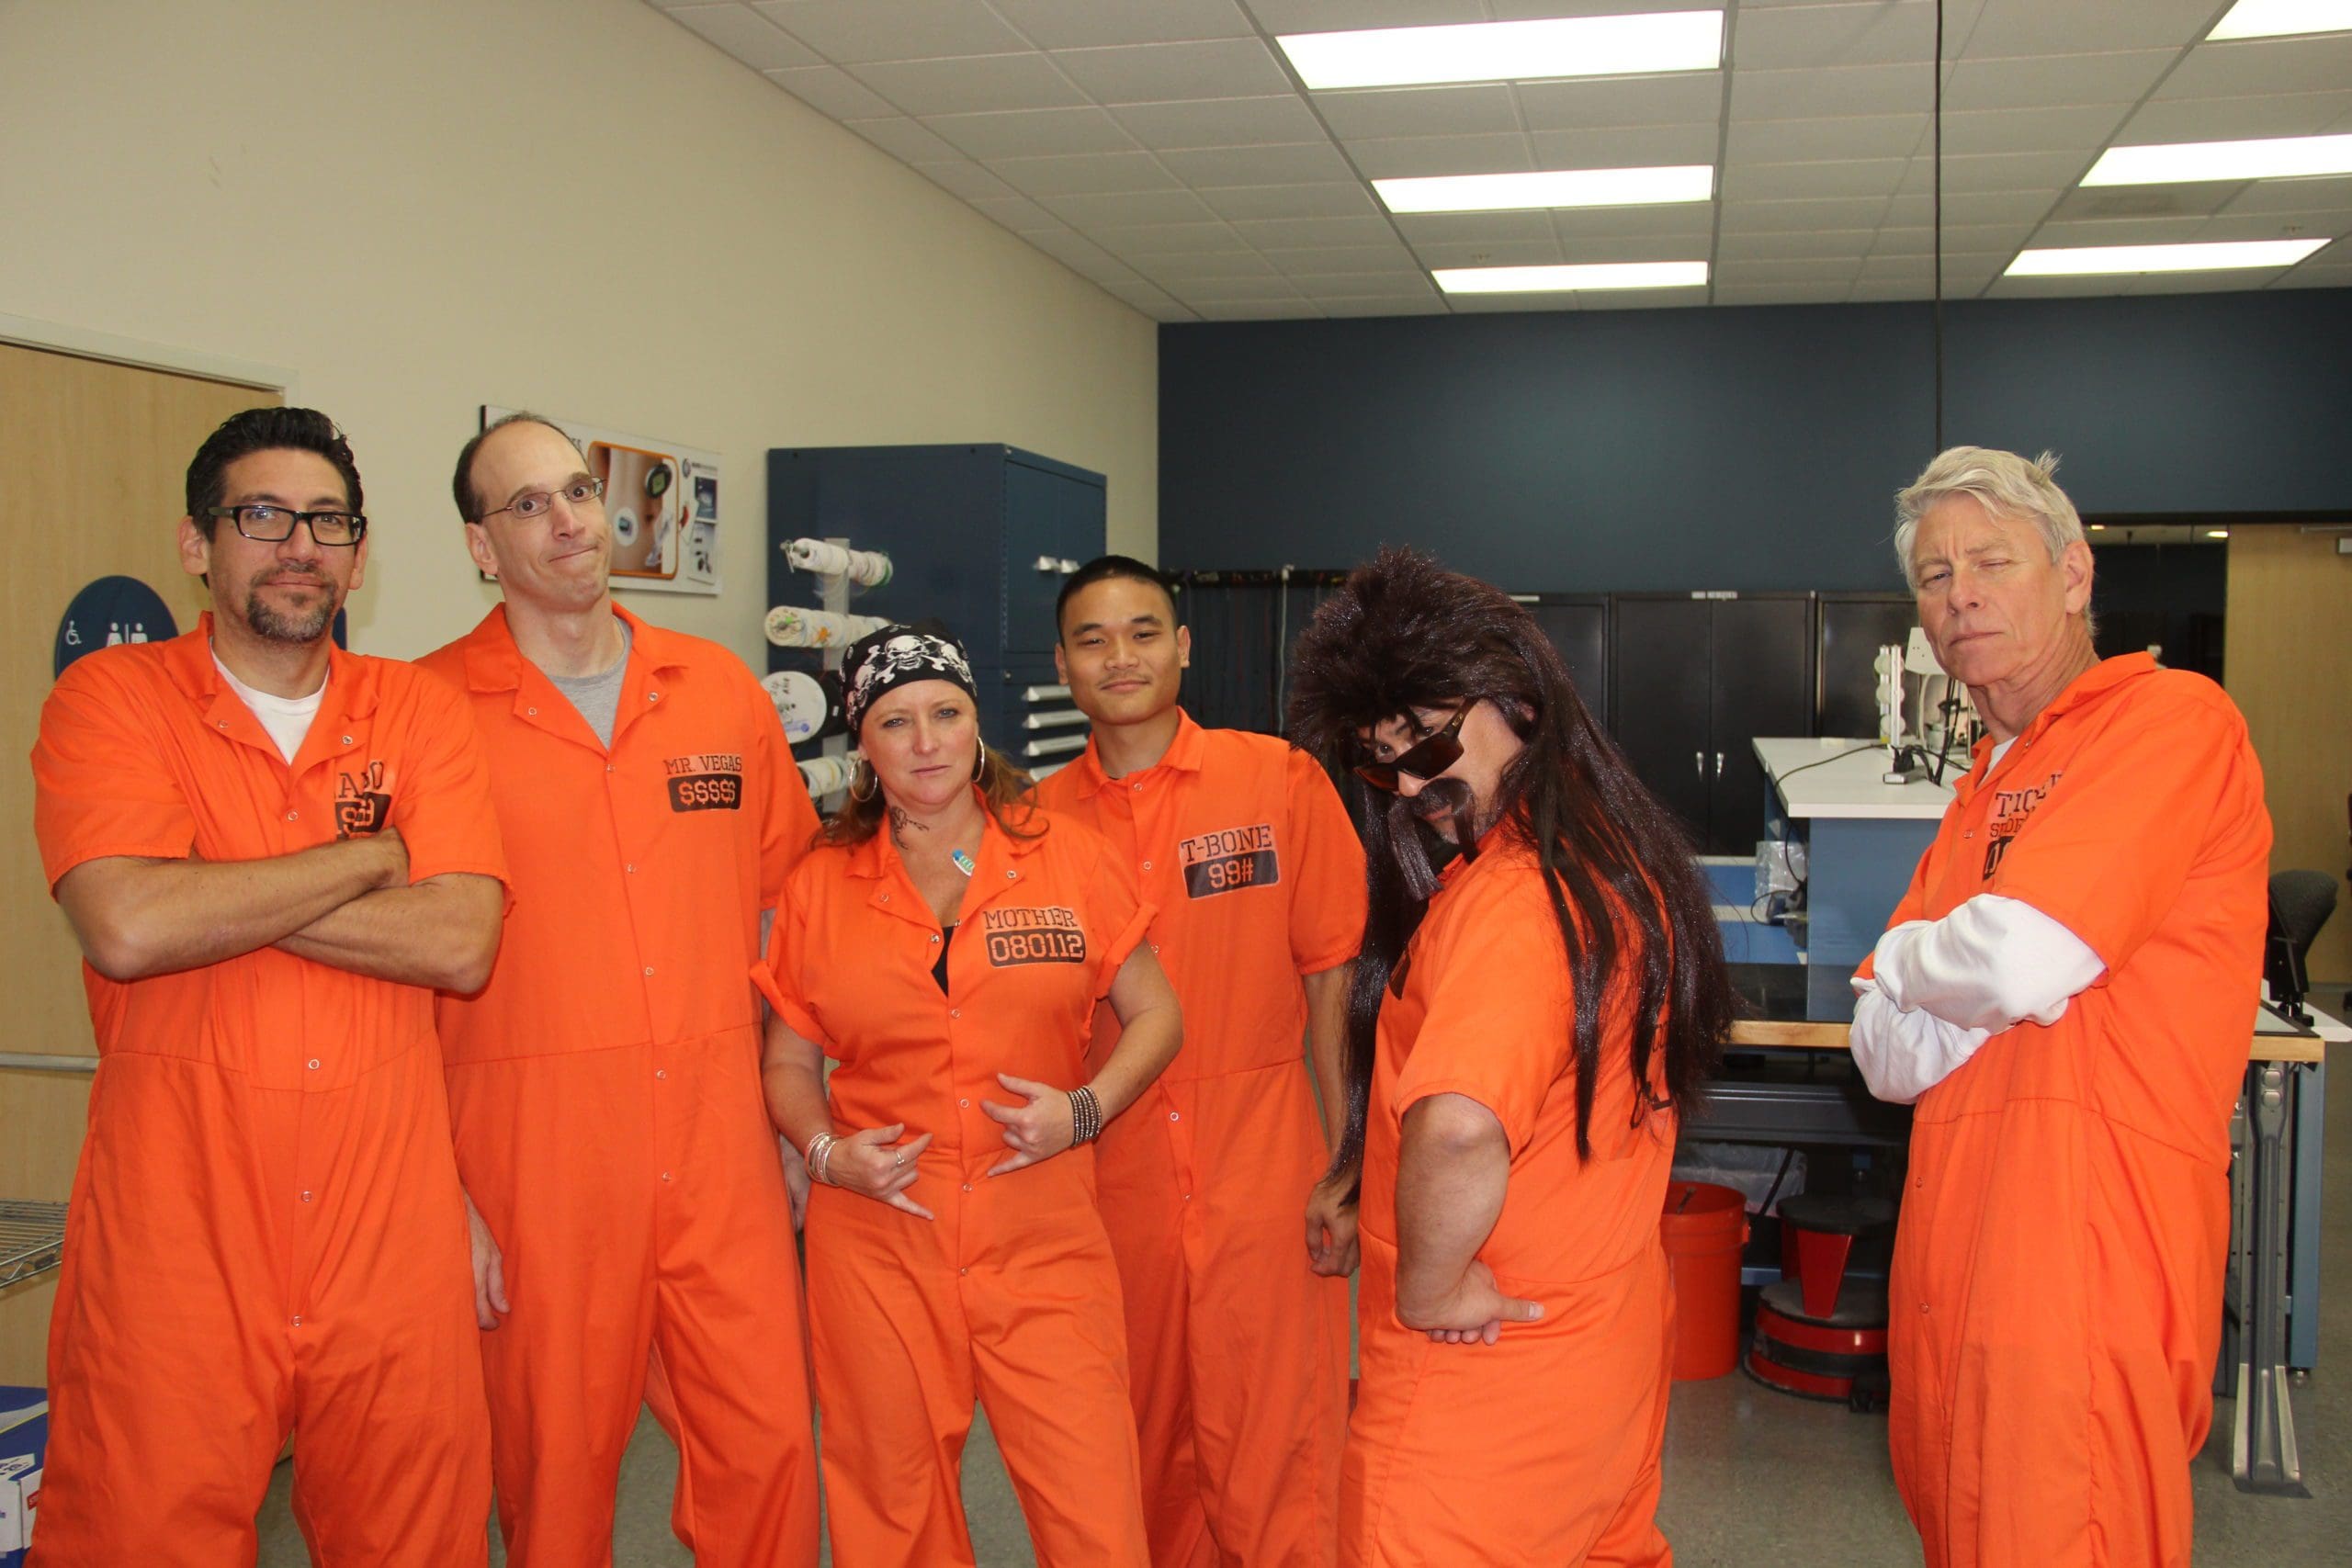 engineering team members dressed up for Halloween in orange jump suits like prison inmates